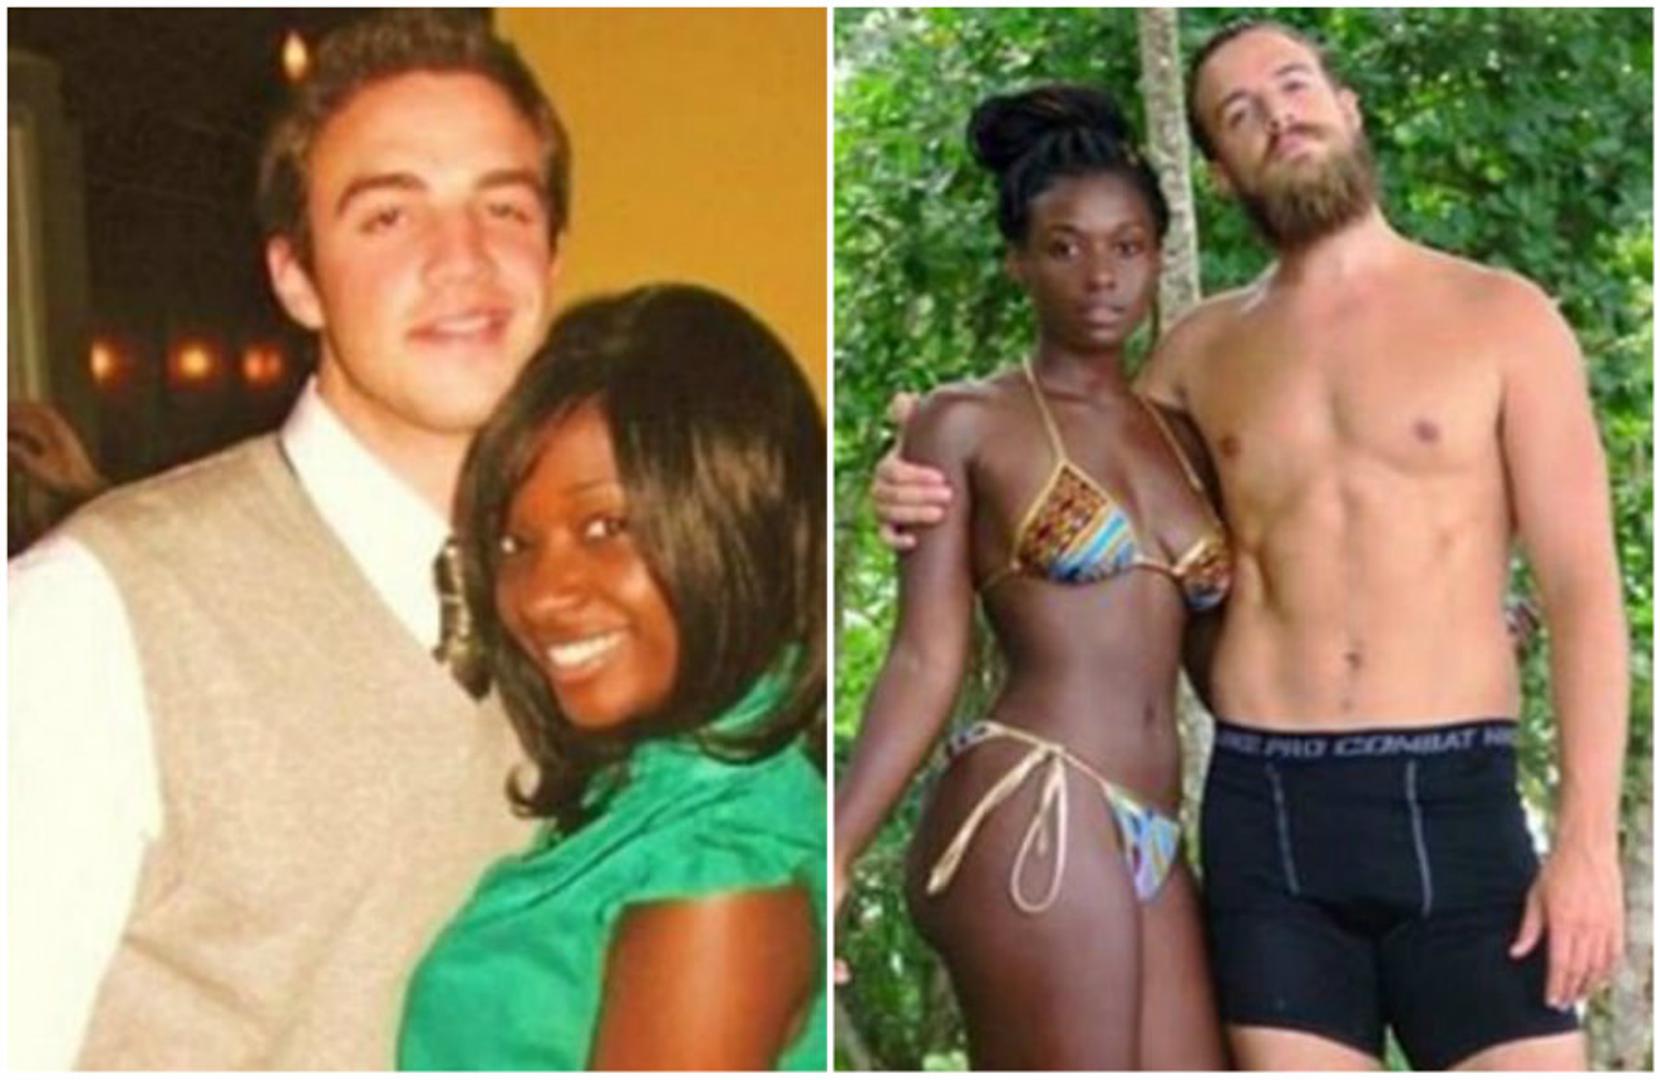 "Deset godina razlike! Lijevo je fotografija iz 2007., a desno iz 2017. godine. Nosila sam kosu zalijepljenu za lice svakog dana, a Dan se brijao jednom tjedno", napisala je Wendy uz fotografije na Instagramu u povodu deset godina njihove veze.